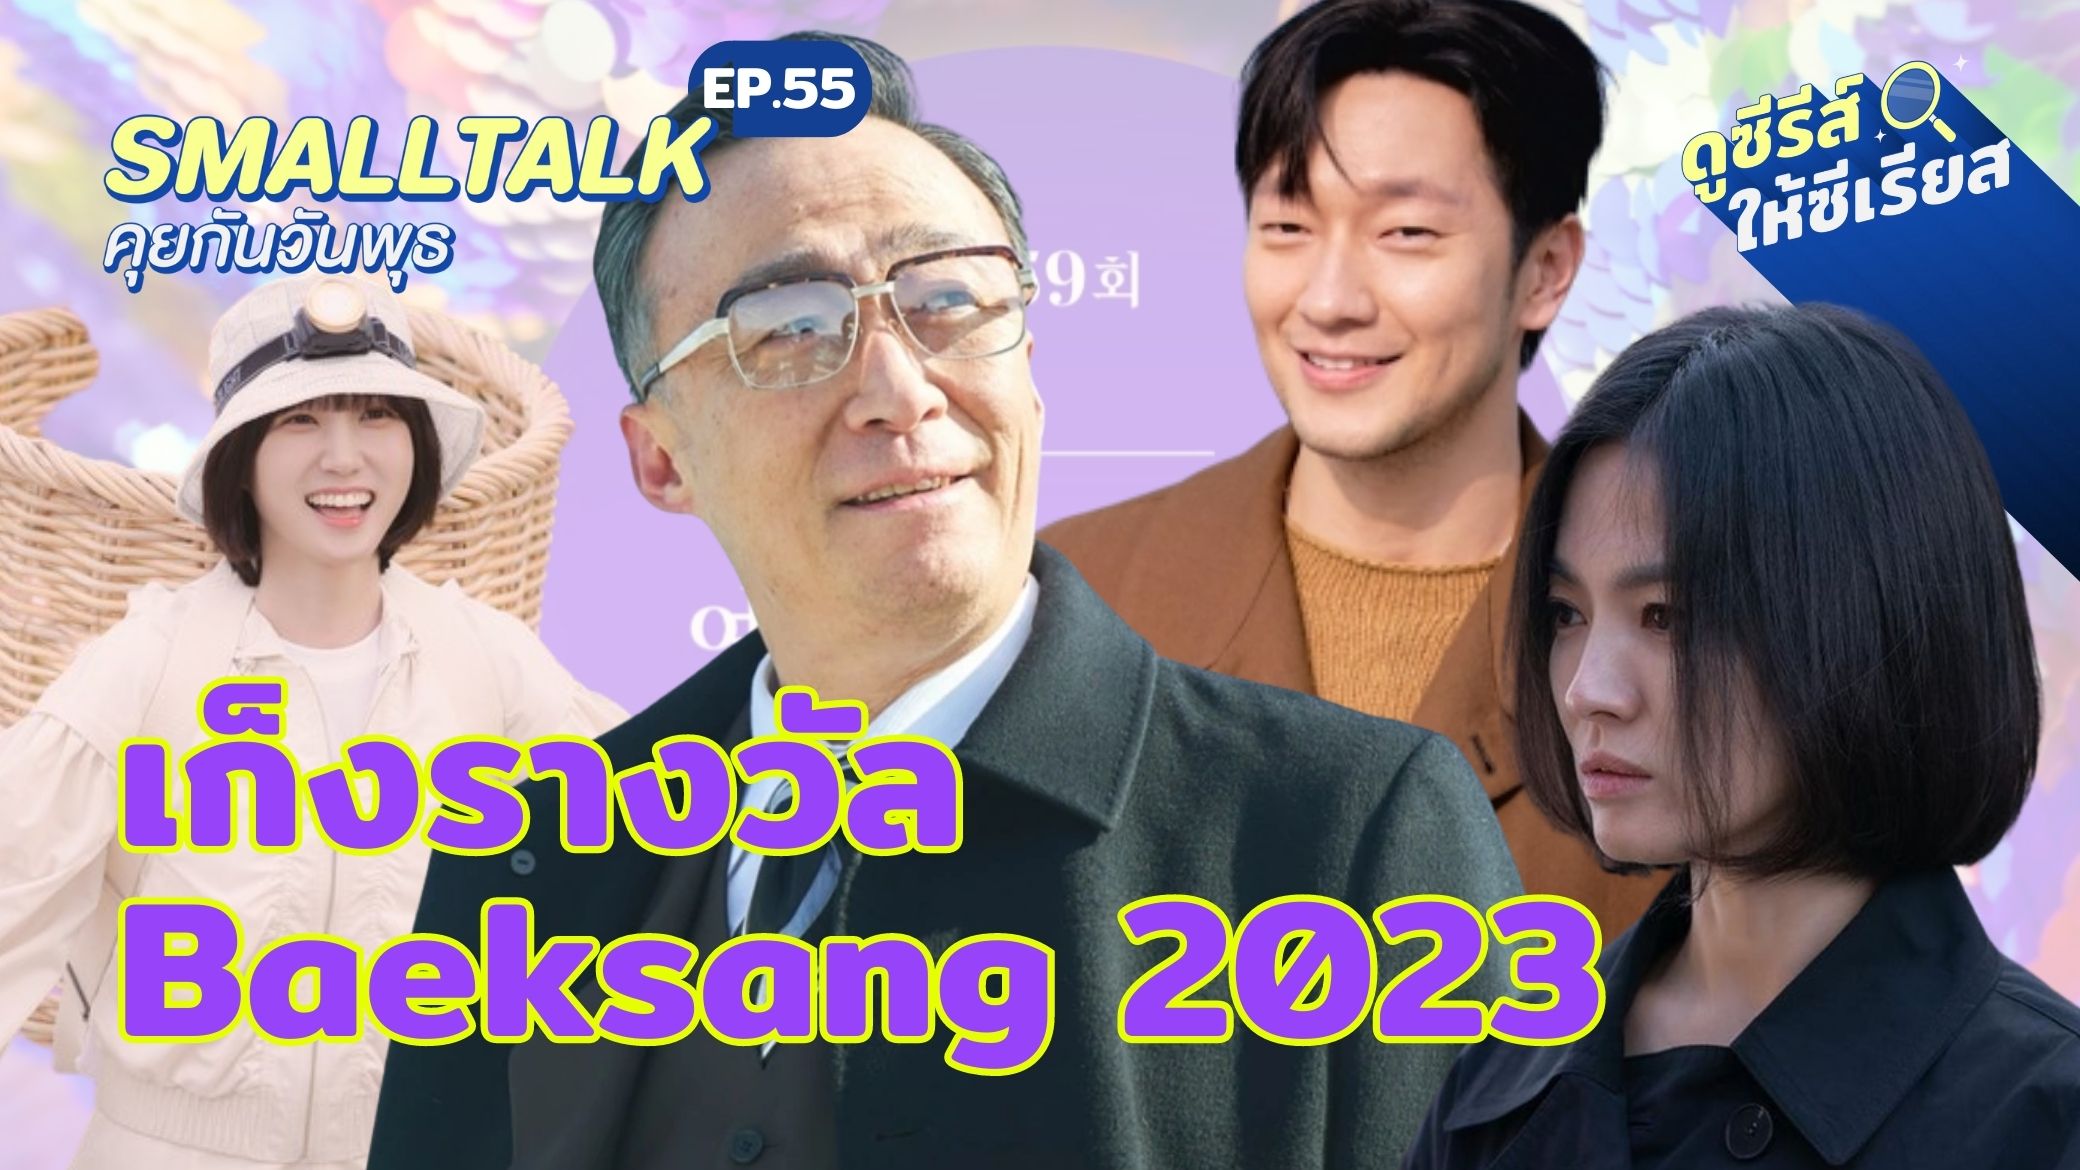 smalltalk-ep55-baeksang-nominees-2023